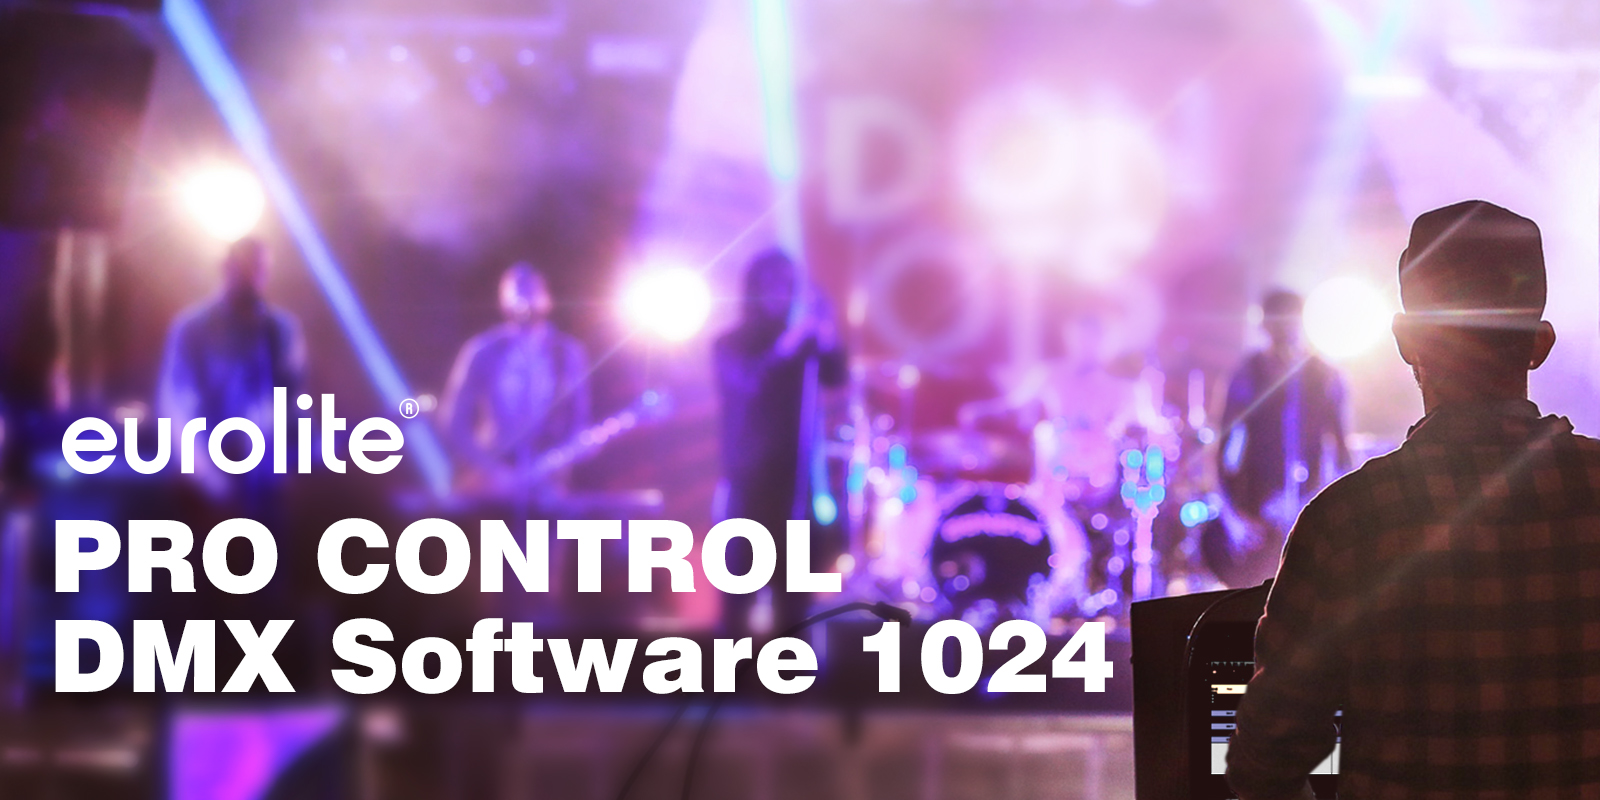 EUROLITE Pro Control DMX Software 1024 title image